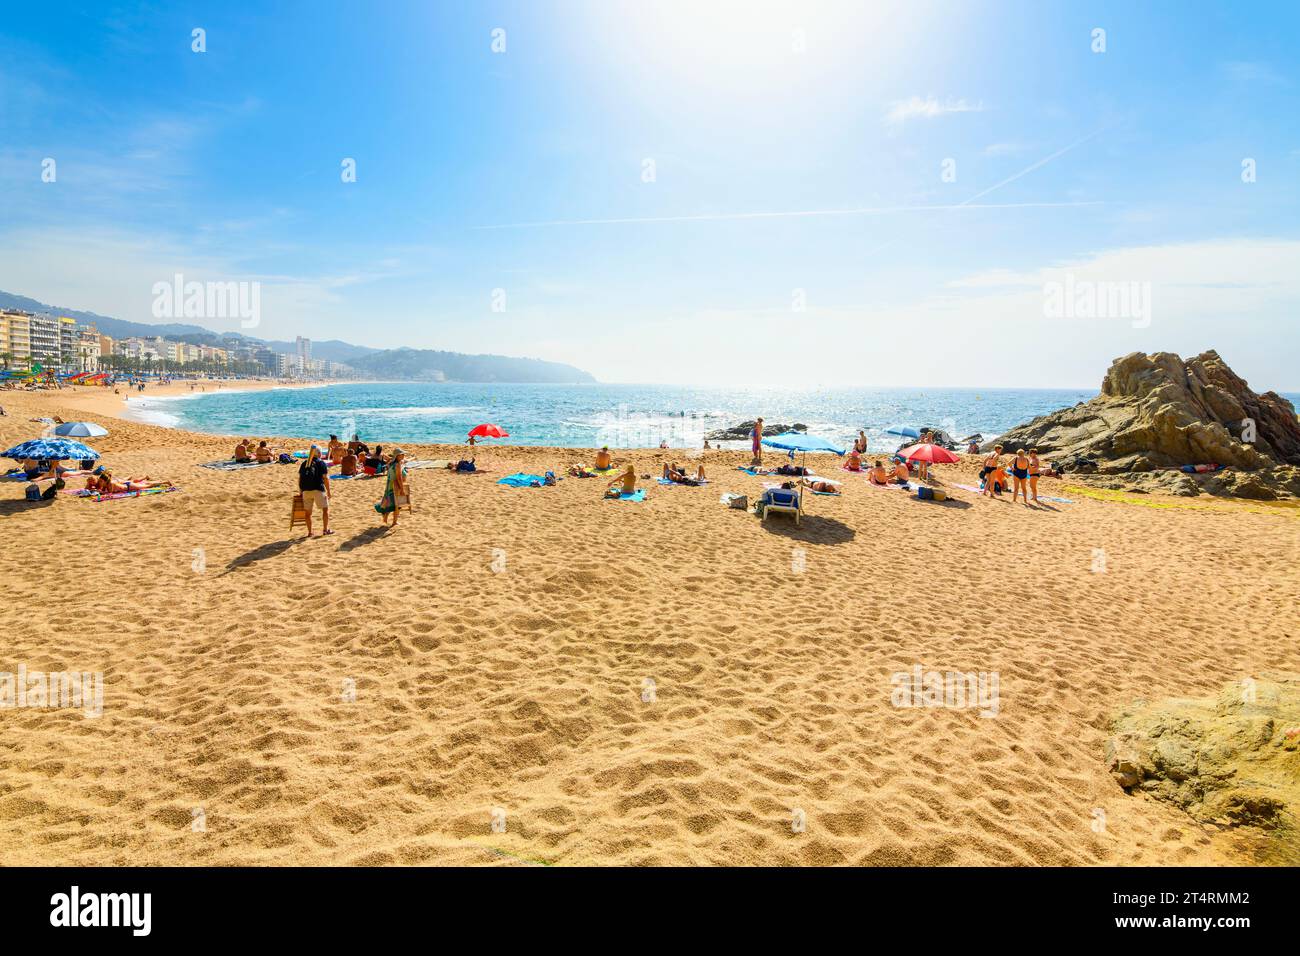 Spanier und Touristen genießen einen Sommertag am breiten Sandstrand Playa Grande im spanischen Ferienort Lloret de Mar an der Costa Brava. Stockfoto